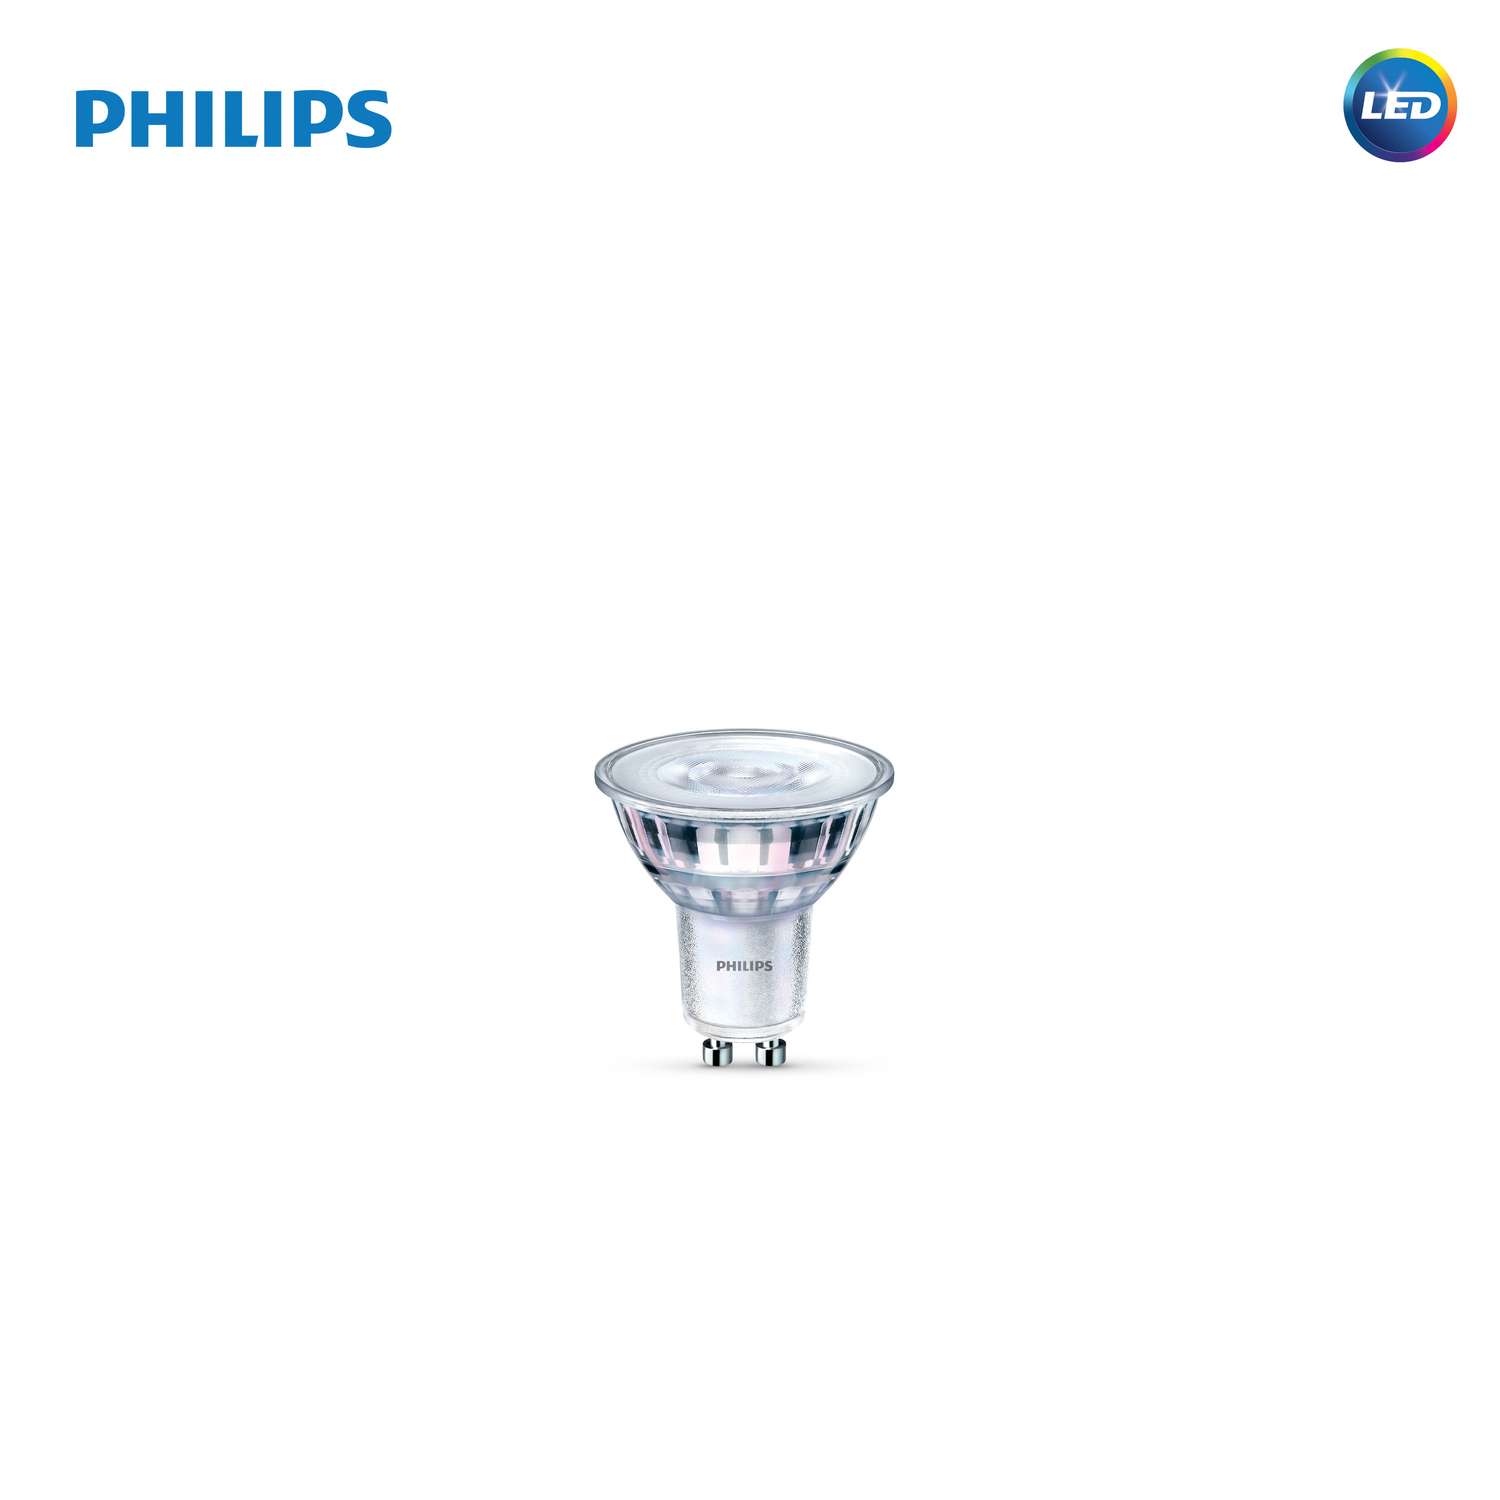 Philips MR16 GU10 LED Bright White 50 Equivalence 3 pk - Ace Hardware